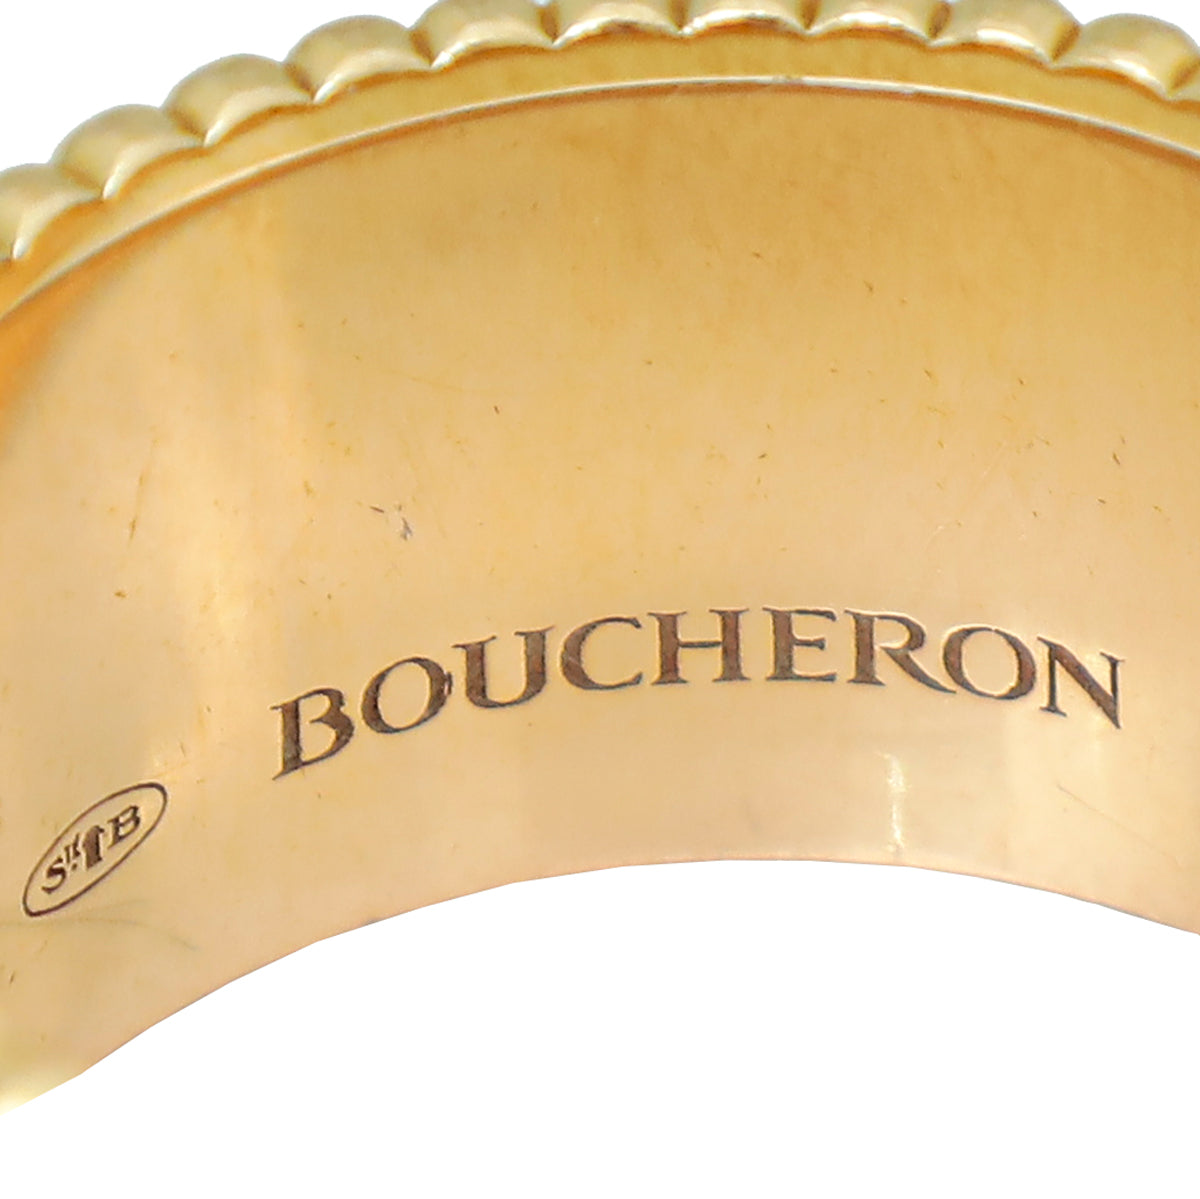 Boucheron 18K Tricolor Gold Quatre Classique Large Model Ring 56